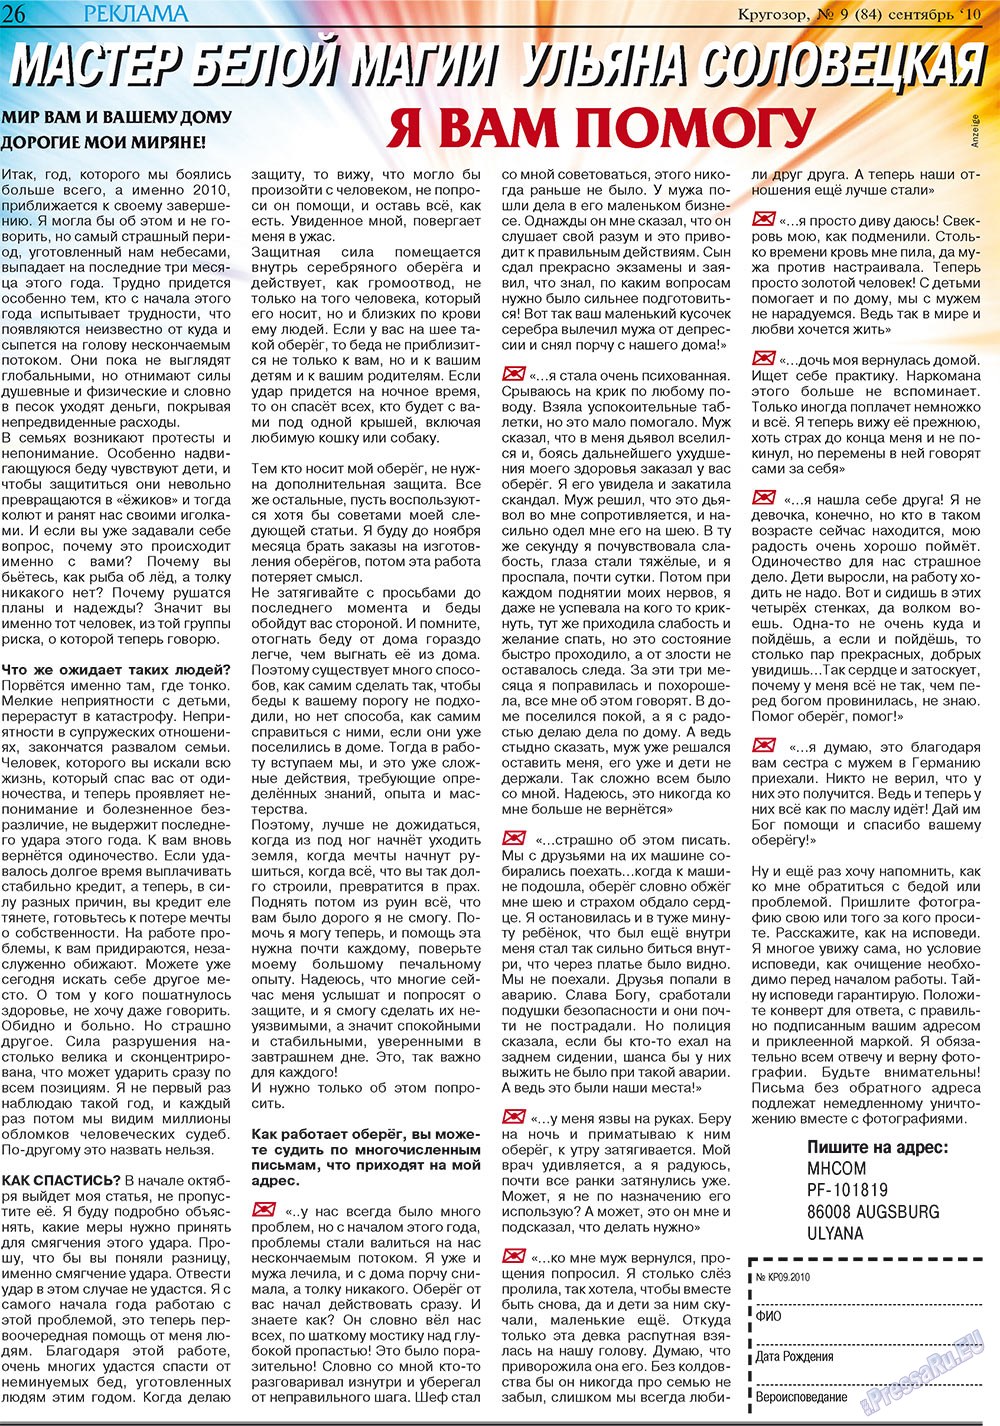 Кругозор плюс!, газета. 2010 №9 стр.50